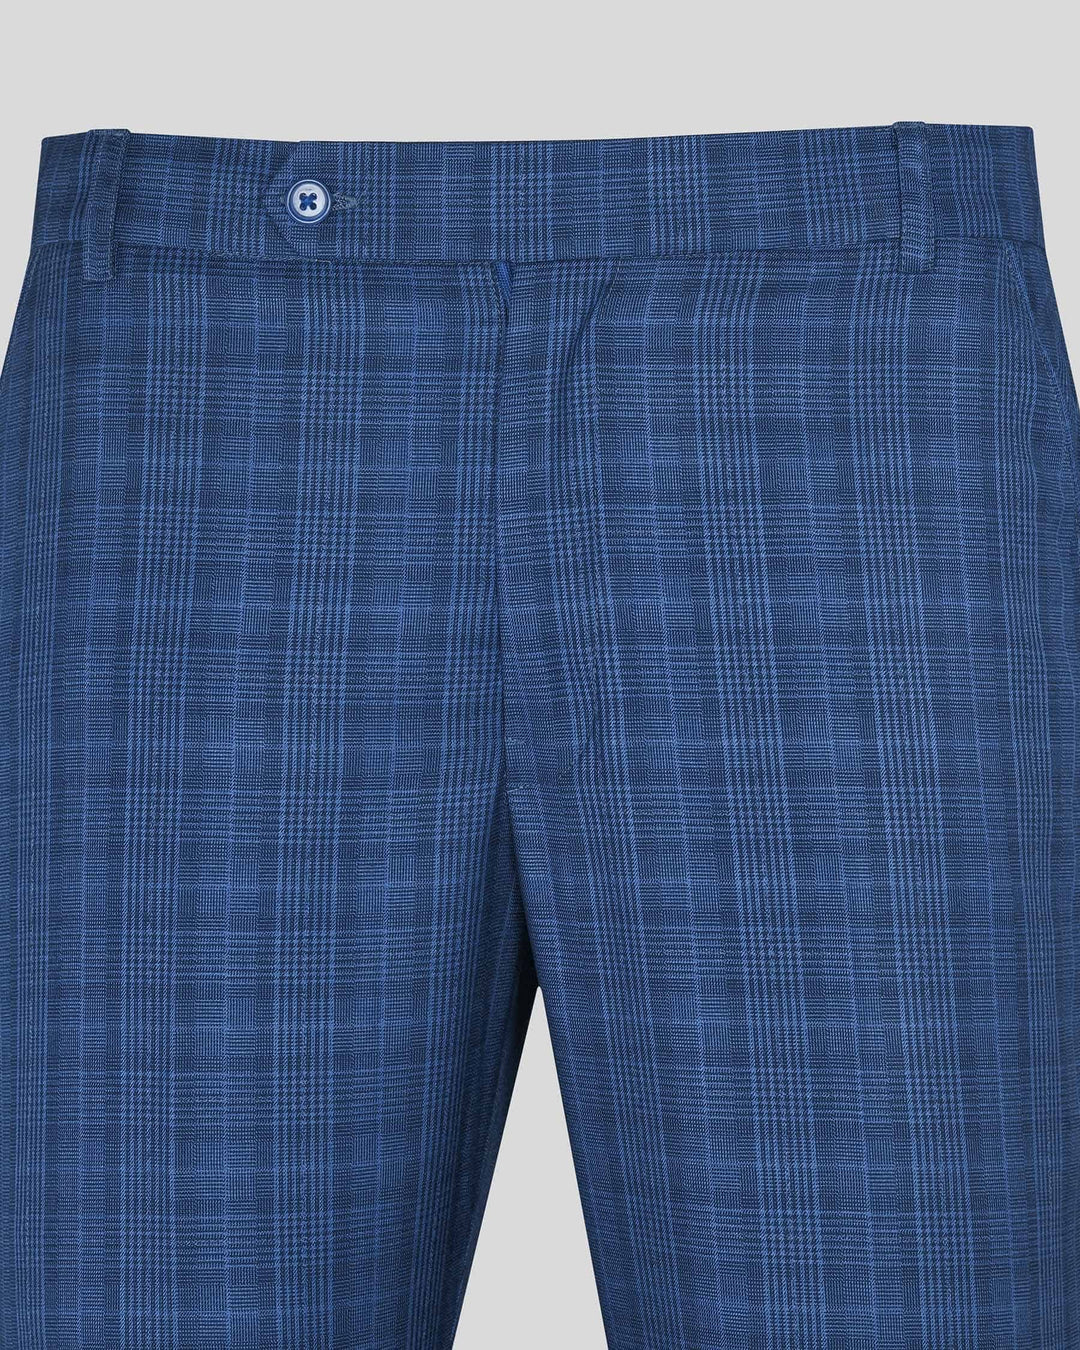 Buy Men Grey Regular Fit Striped Formal Trousers online | Looksgud.in